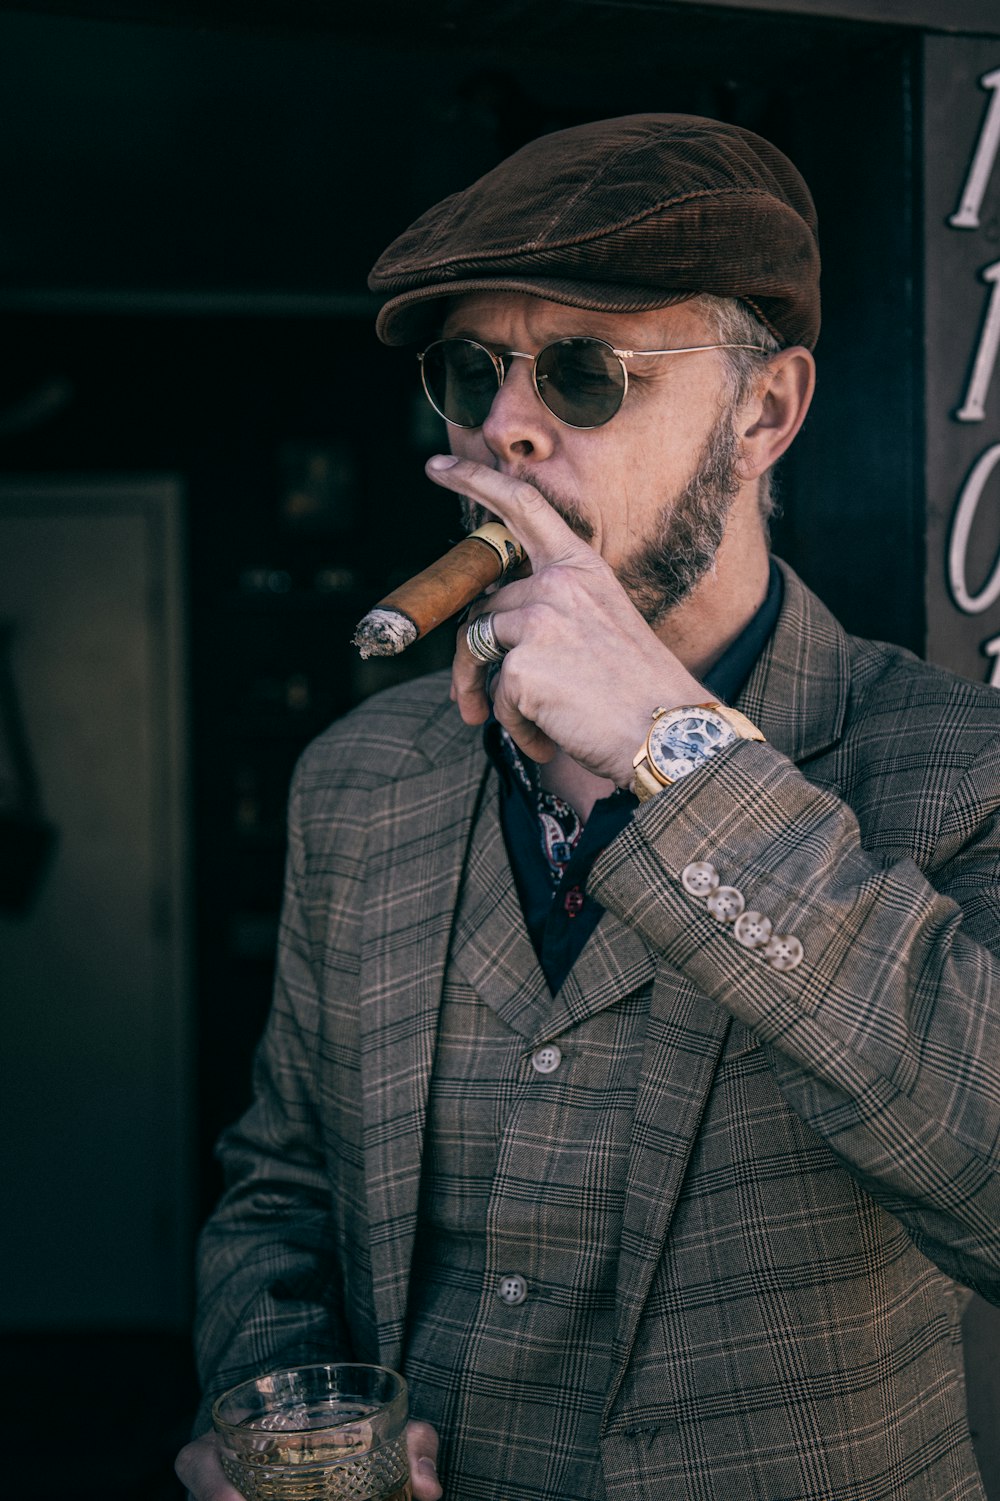 Mann in braun-schwarz kariertem Mantel raucht Zigarette